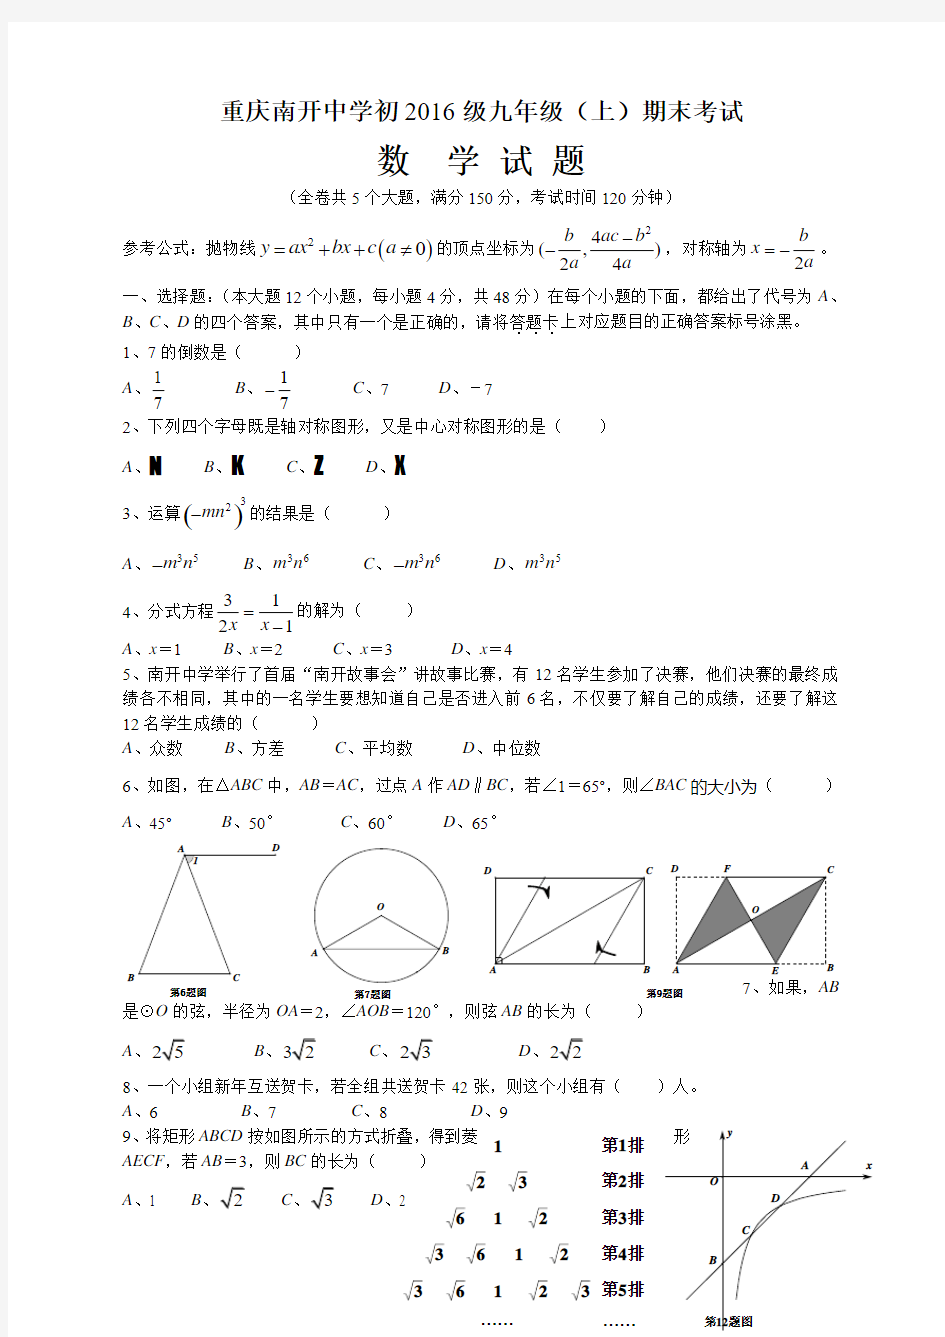 重庆南开中学初2016级九年级上数学期末试题